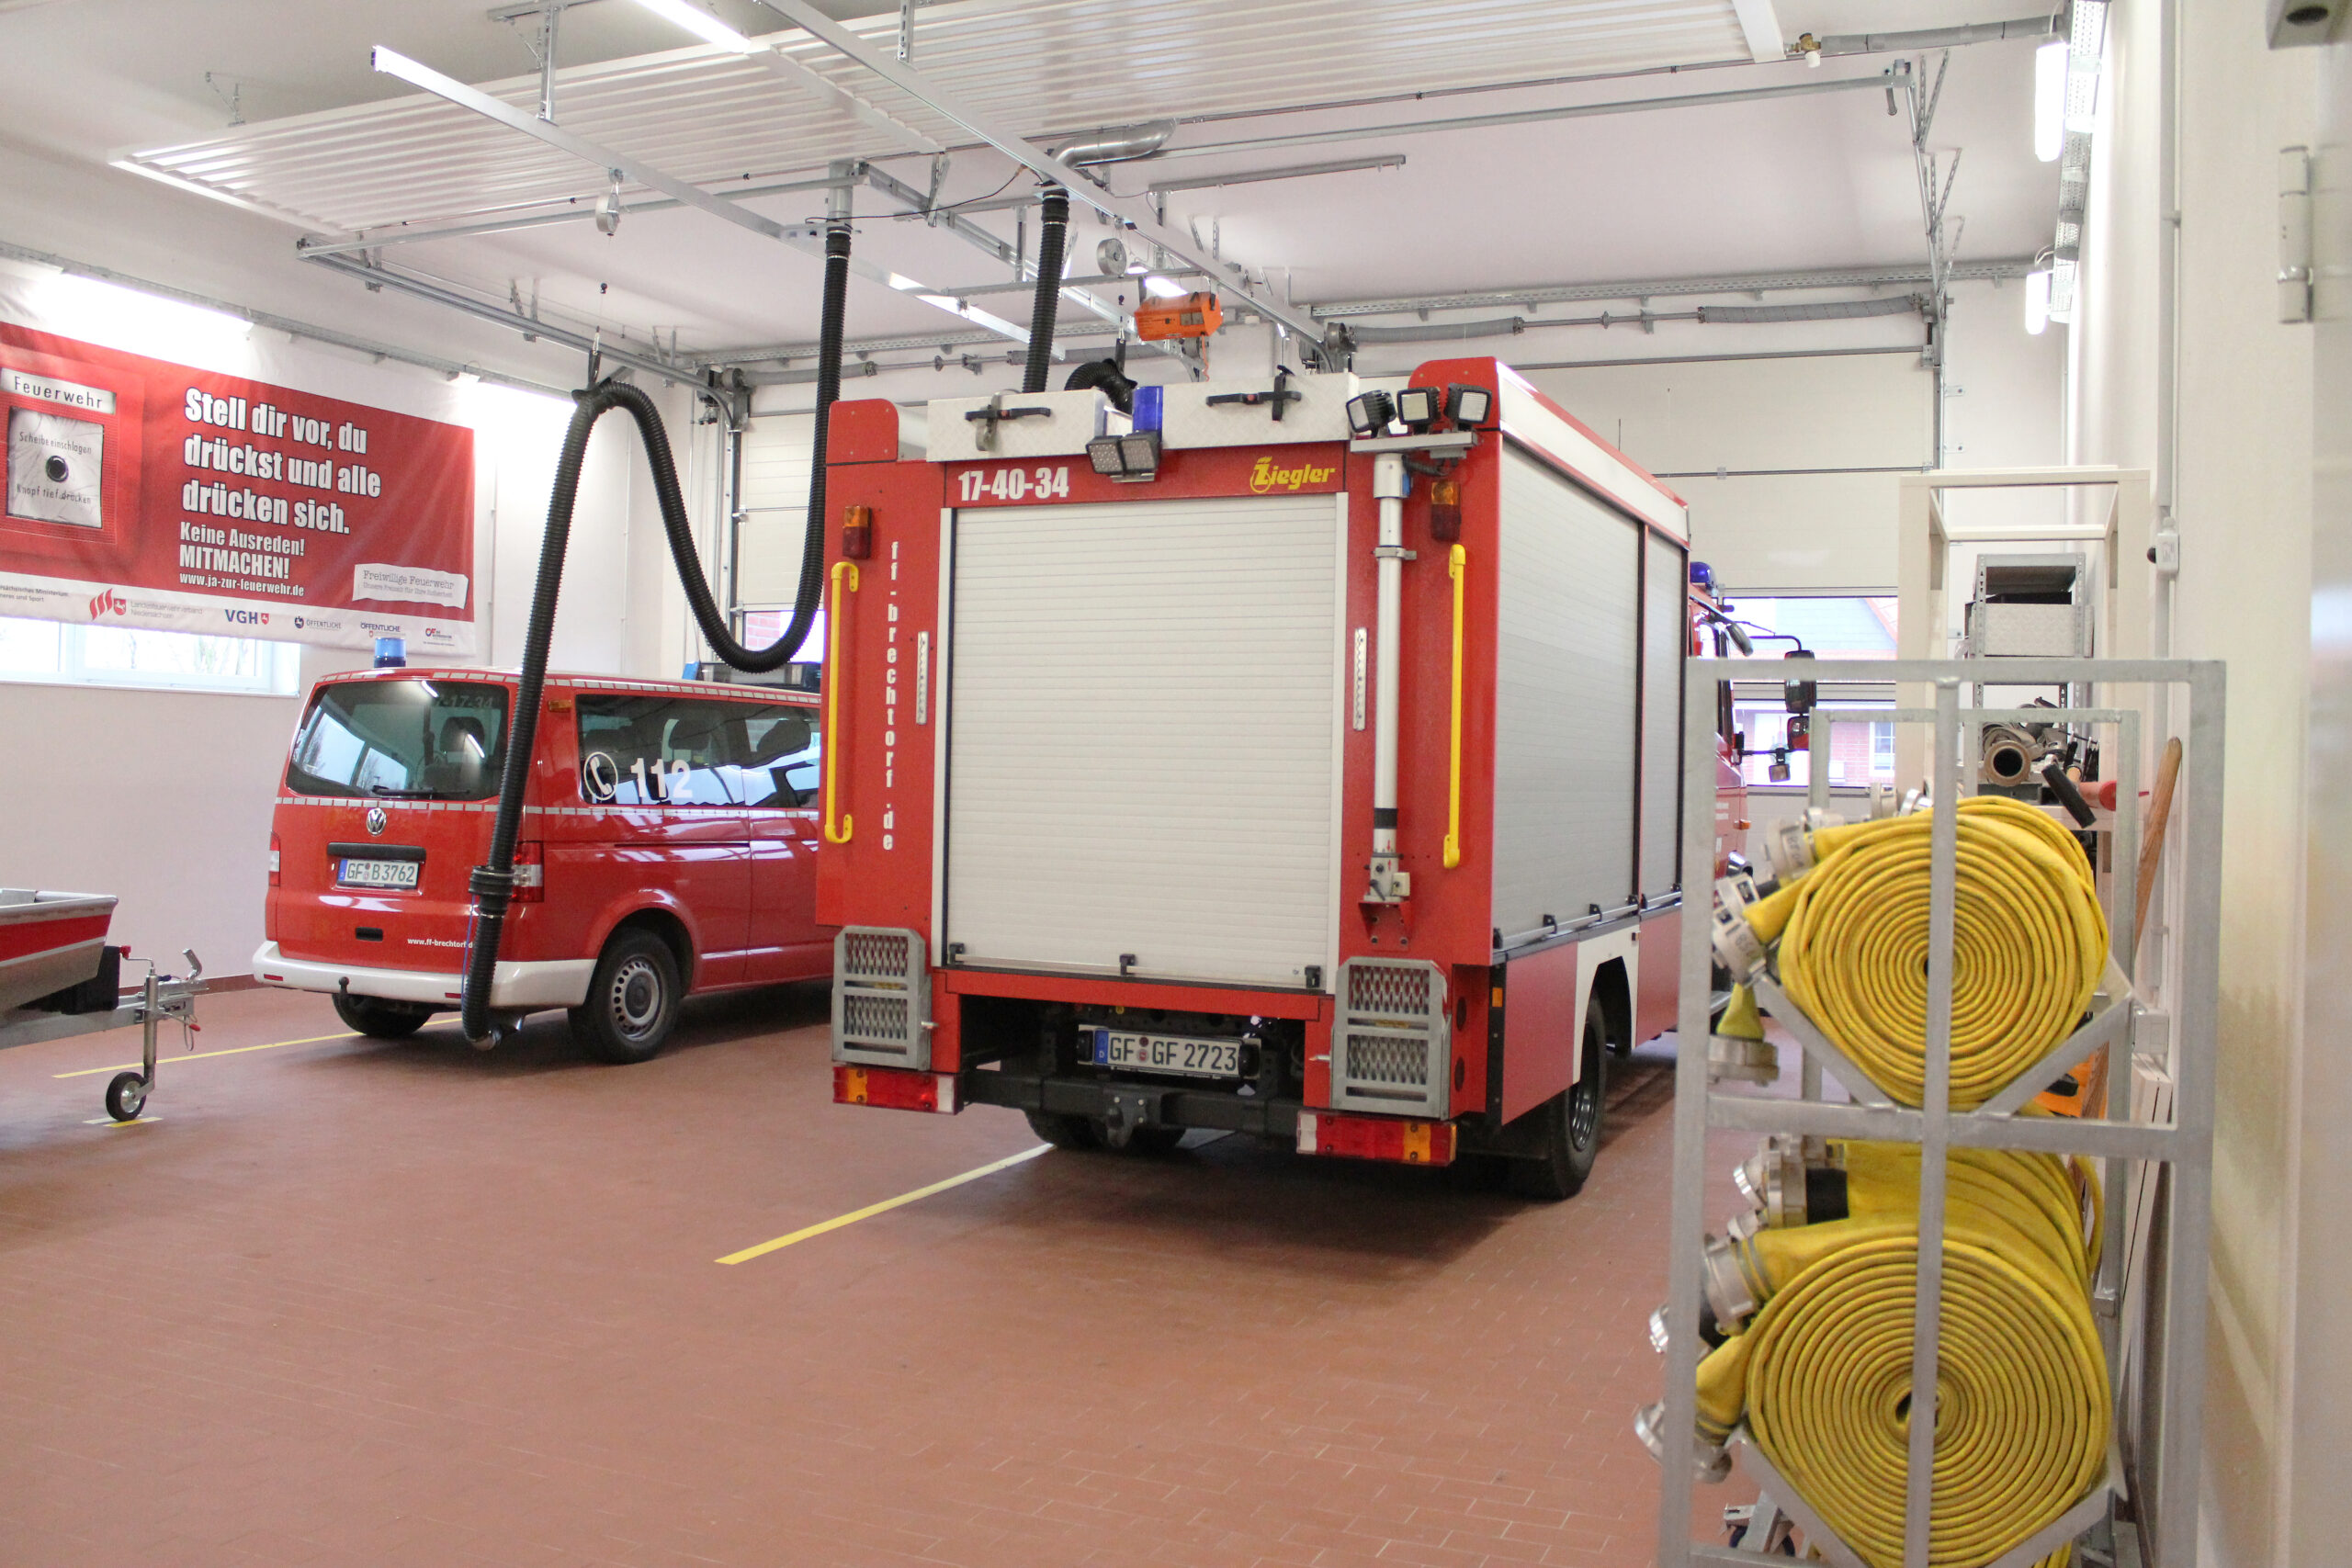 Zwei Fahrzeugplätzen im Feuerwehrgerätehaus in Brechtorf, Planung und Architektur vom Architekturbüro Die Planschmiede